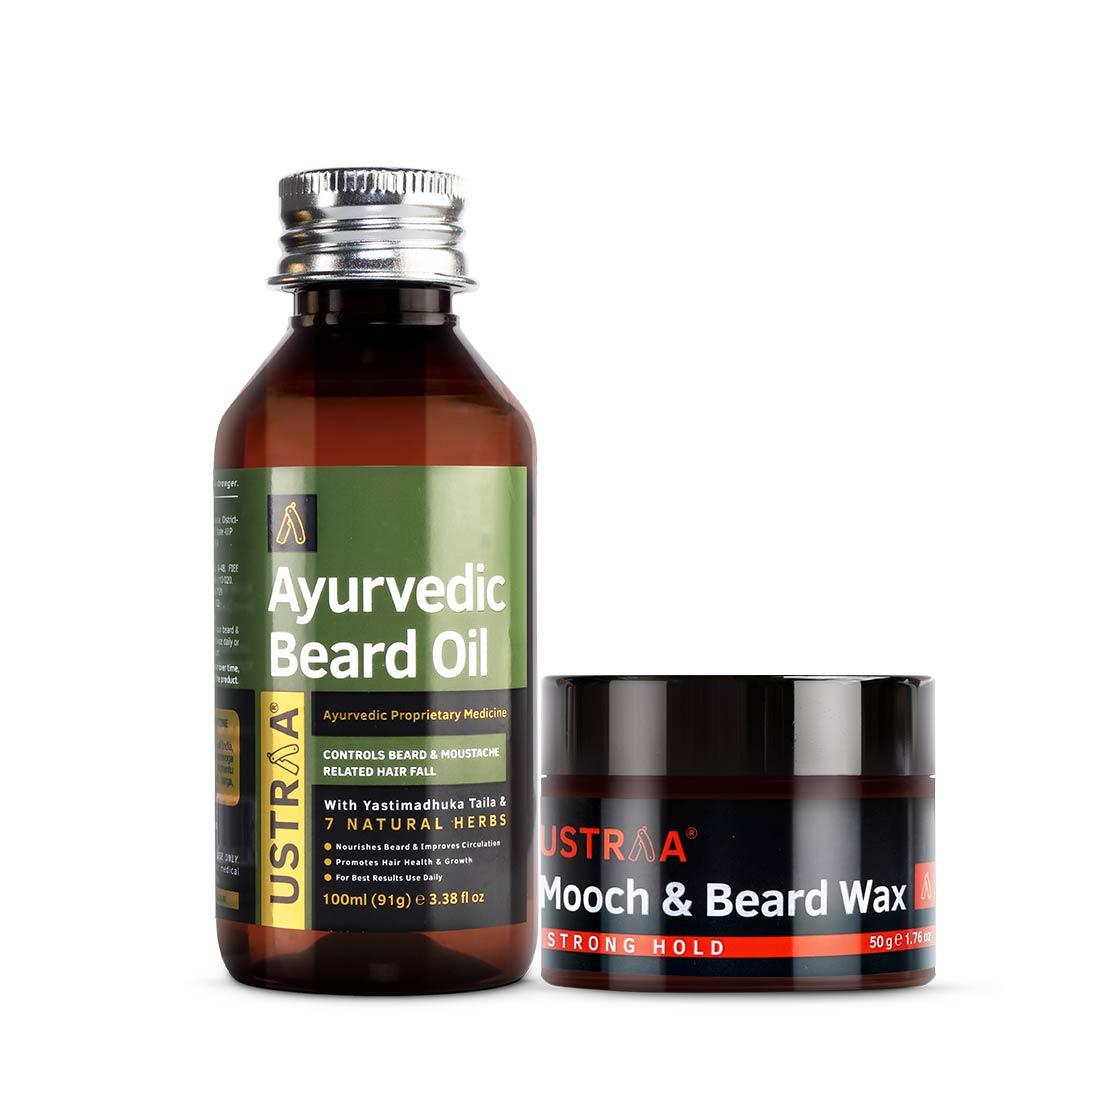 Ayurvedic Beard Oil & Mooch Wax